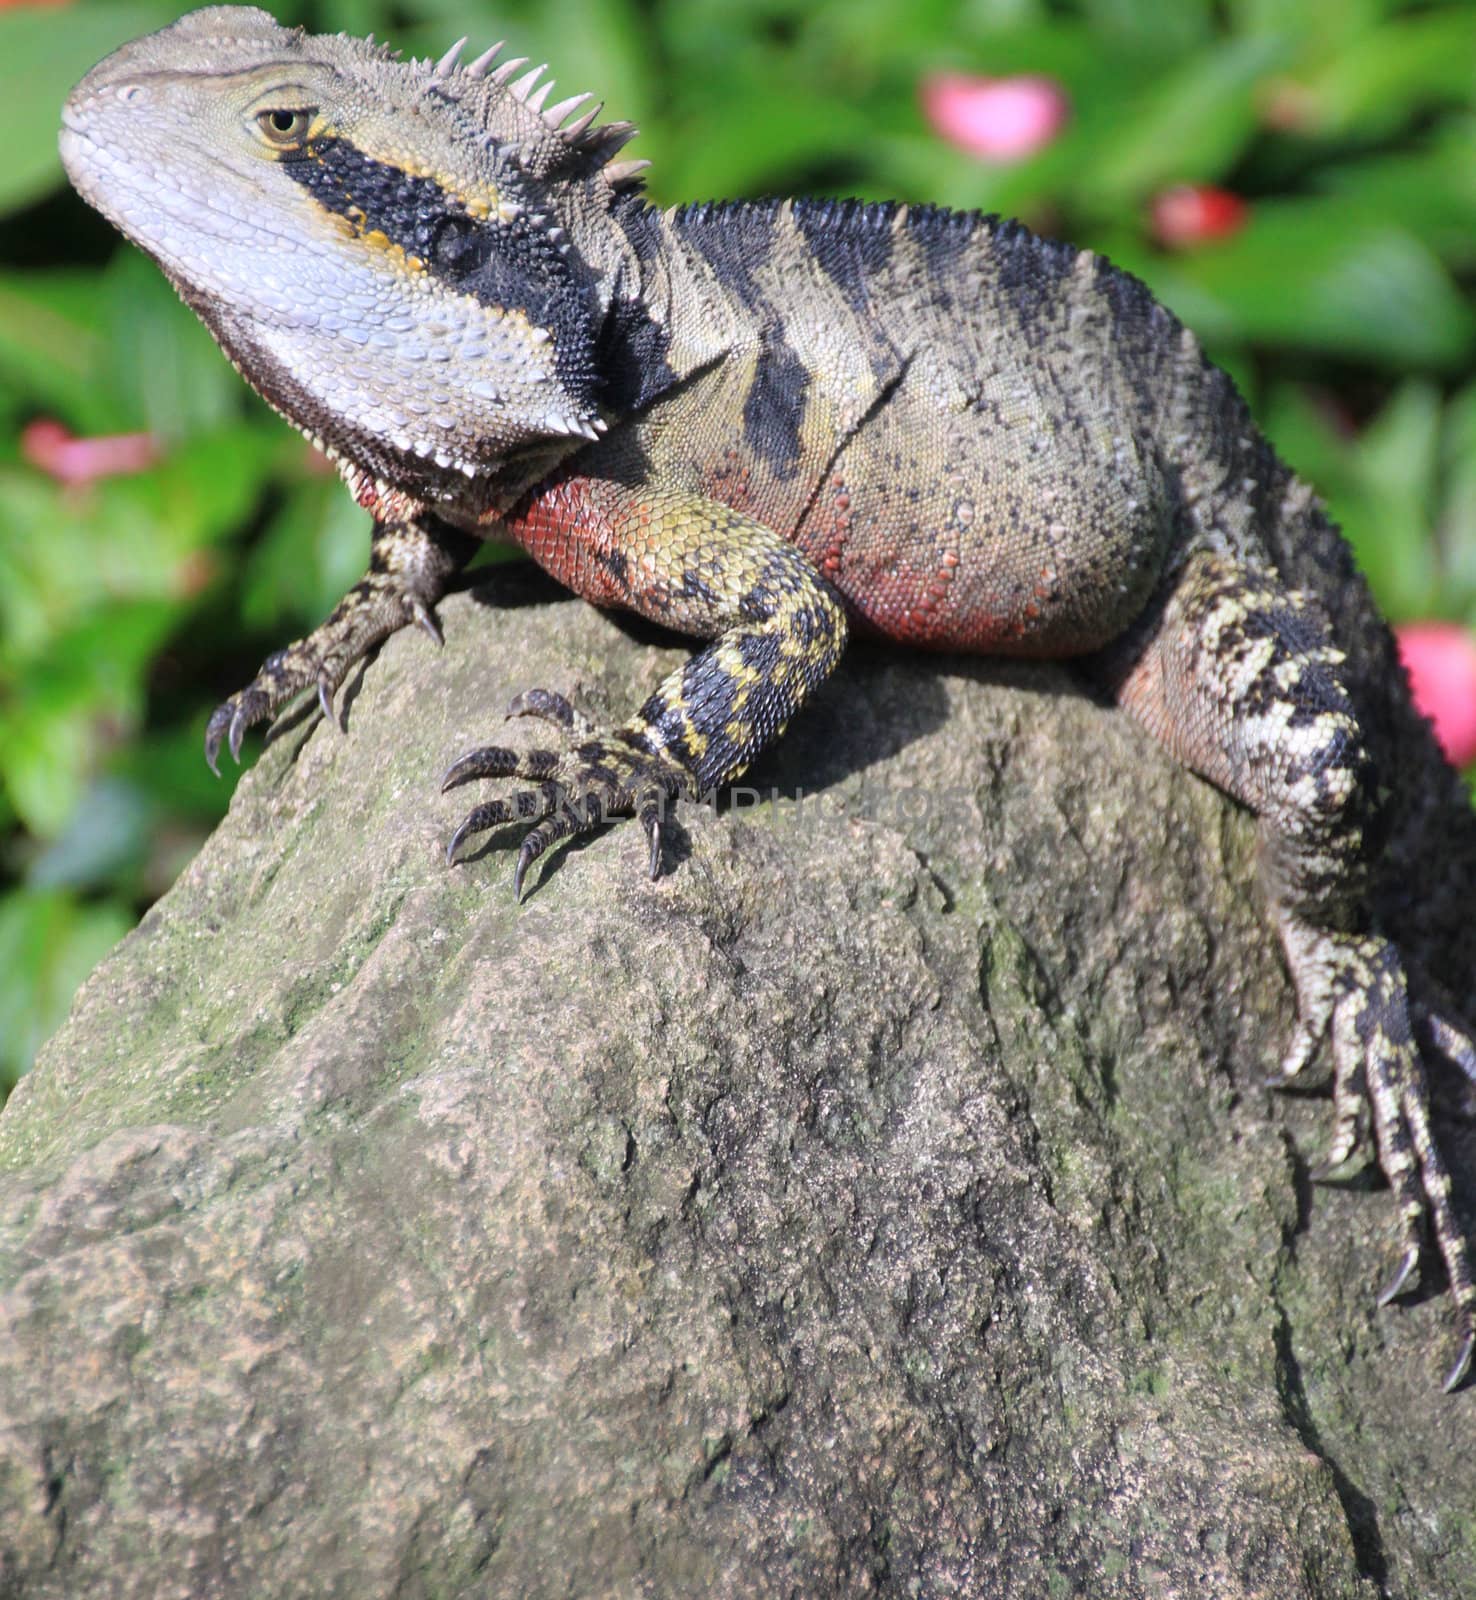 Australian lizard on a rock in a garden